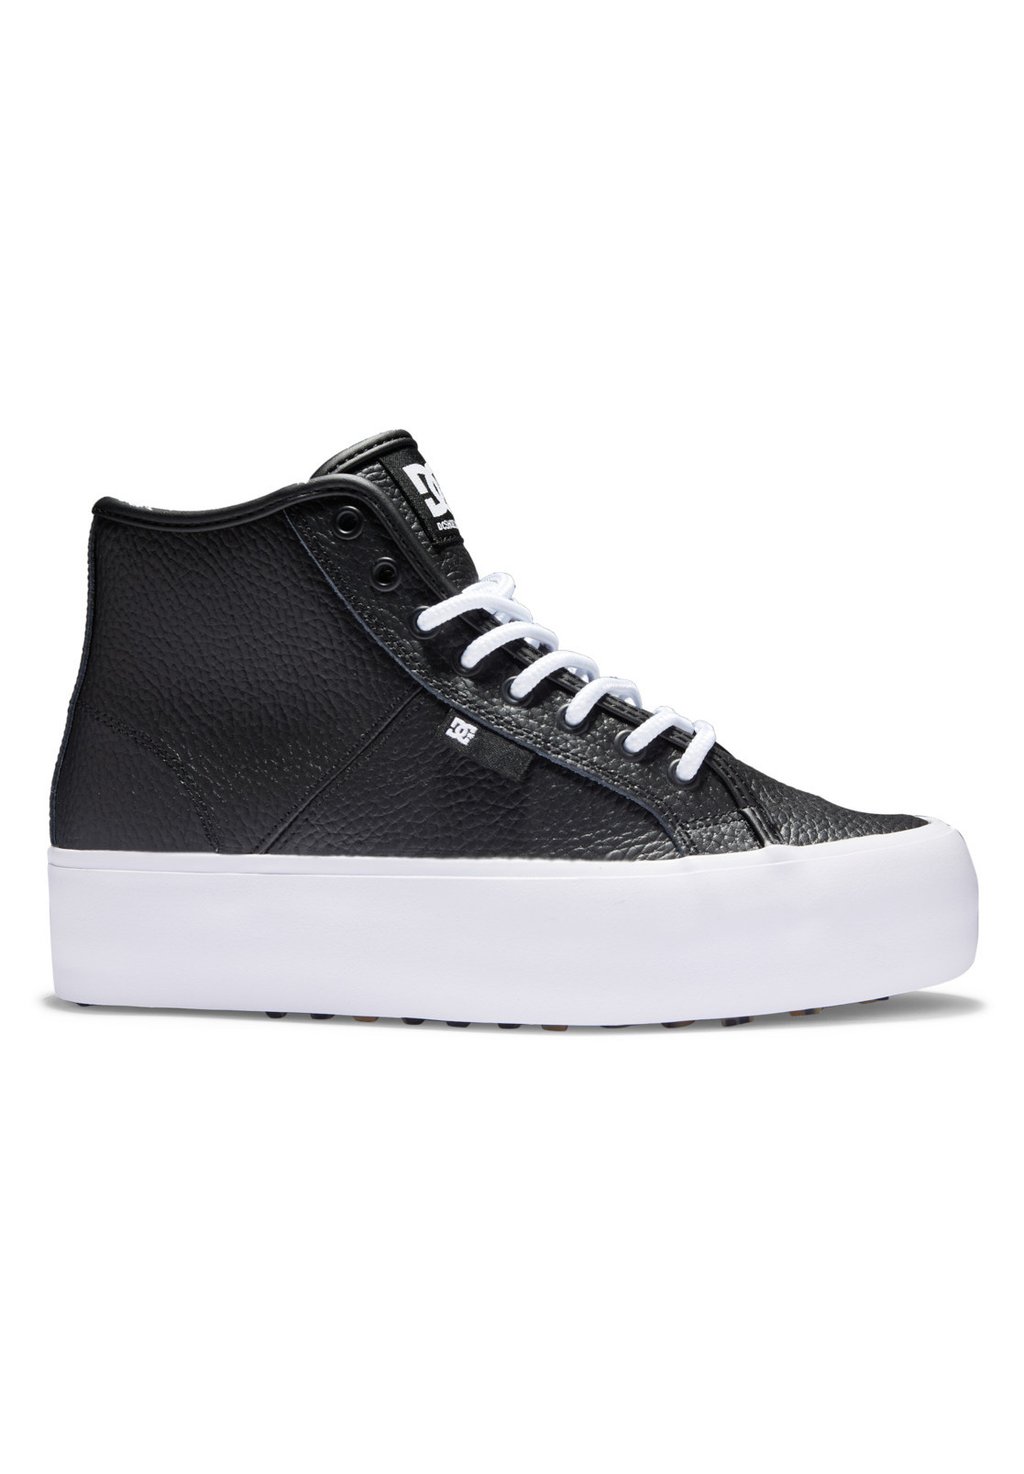 Высокие кроссовки DC Shoes MANUAL, цвет black white кроссовки dc manual tx se цвет black white black